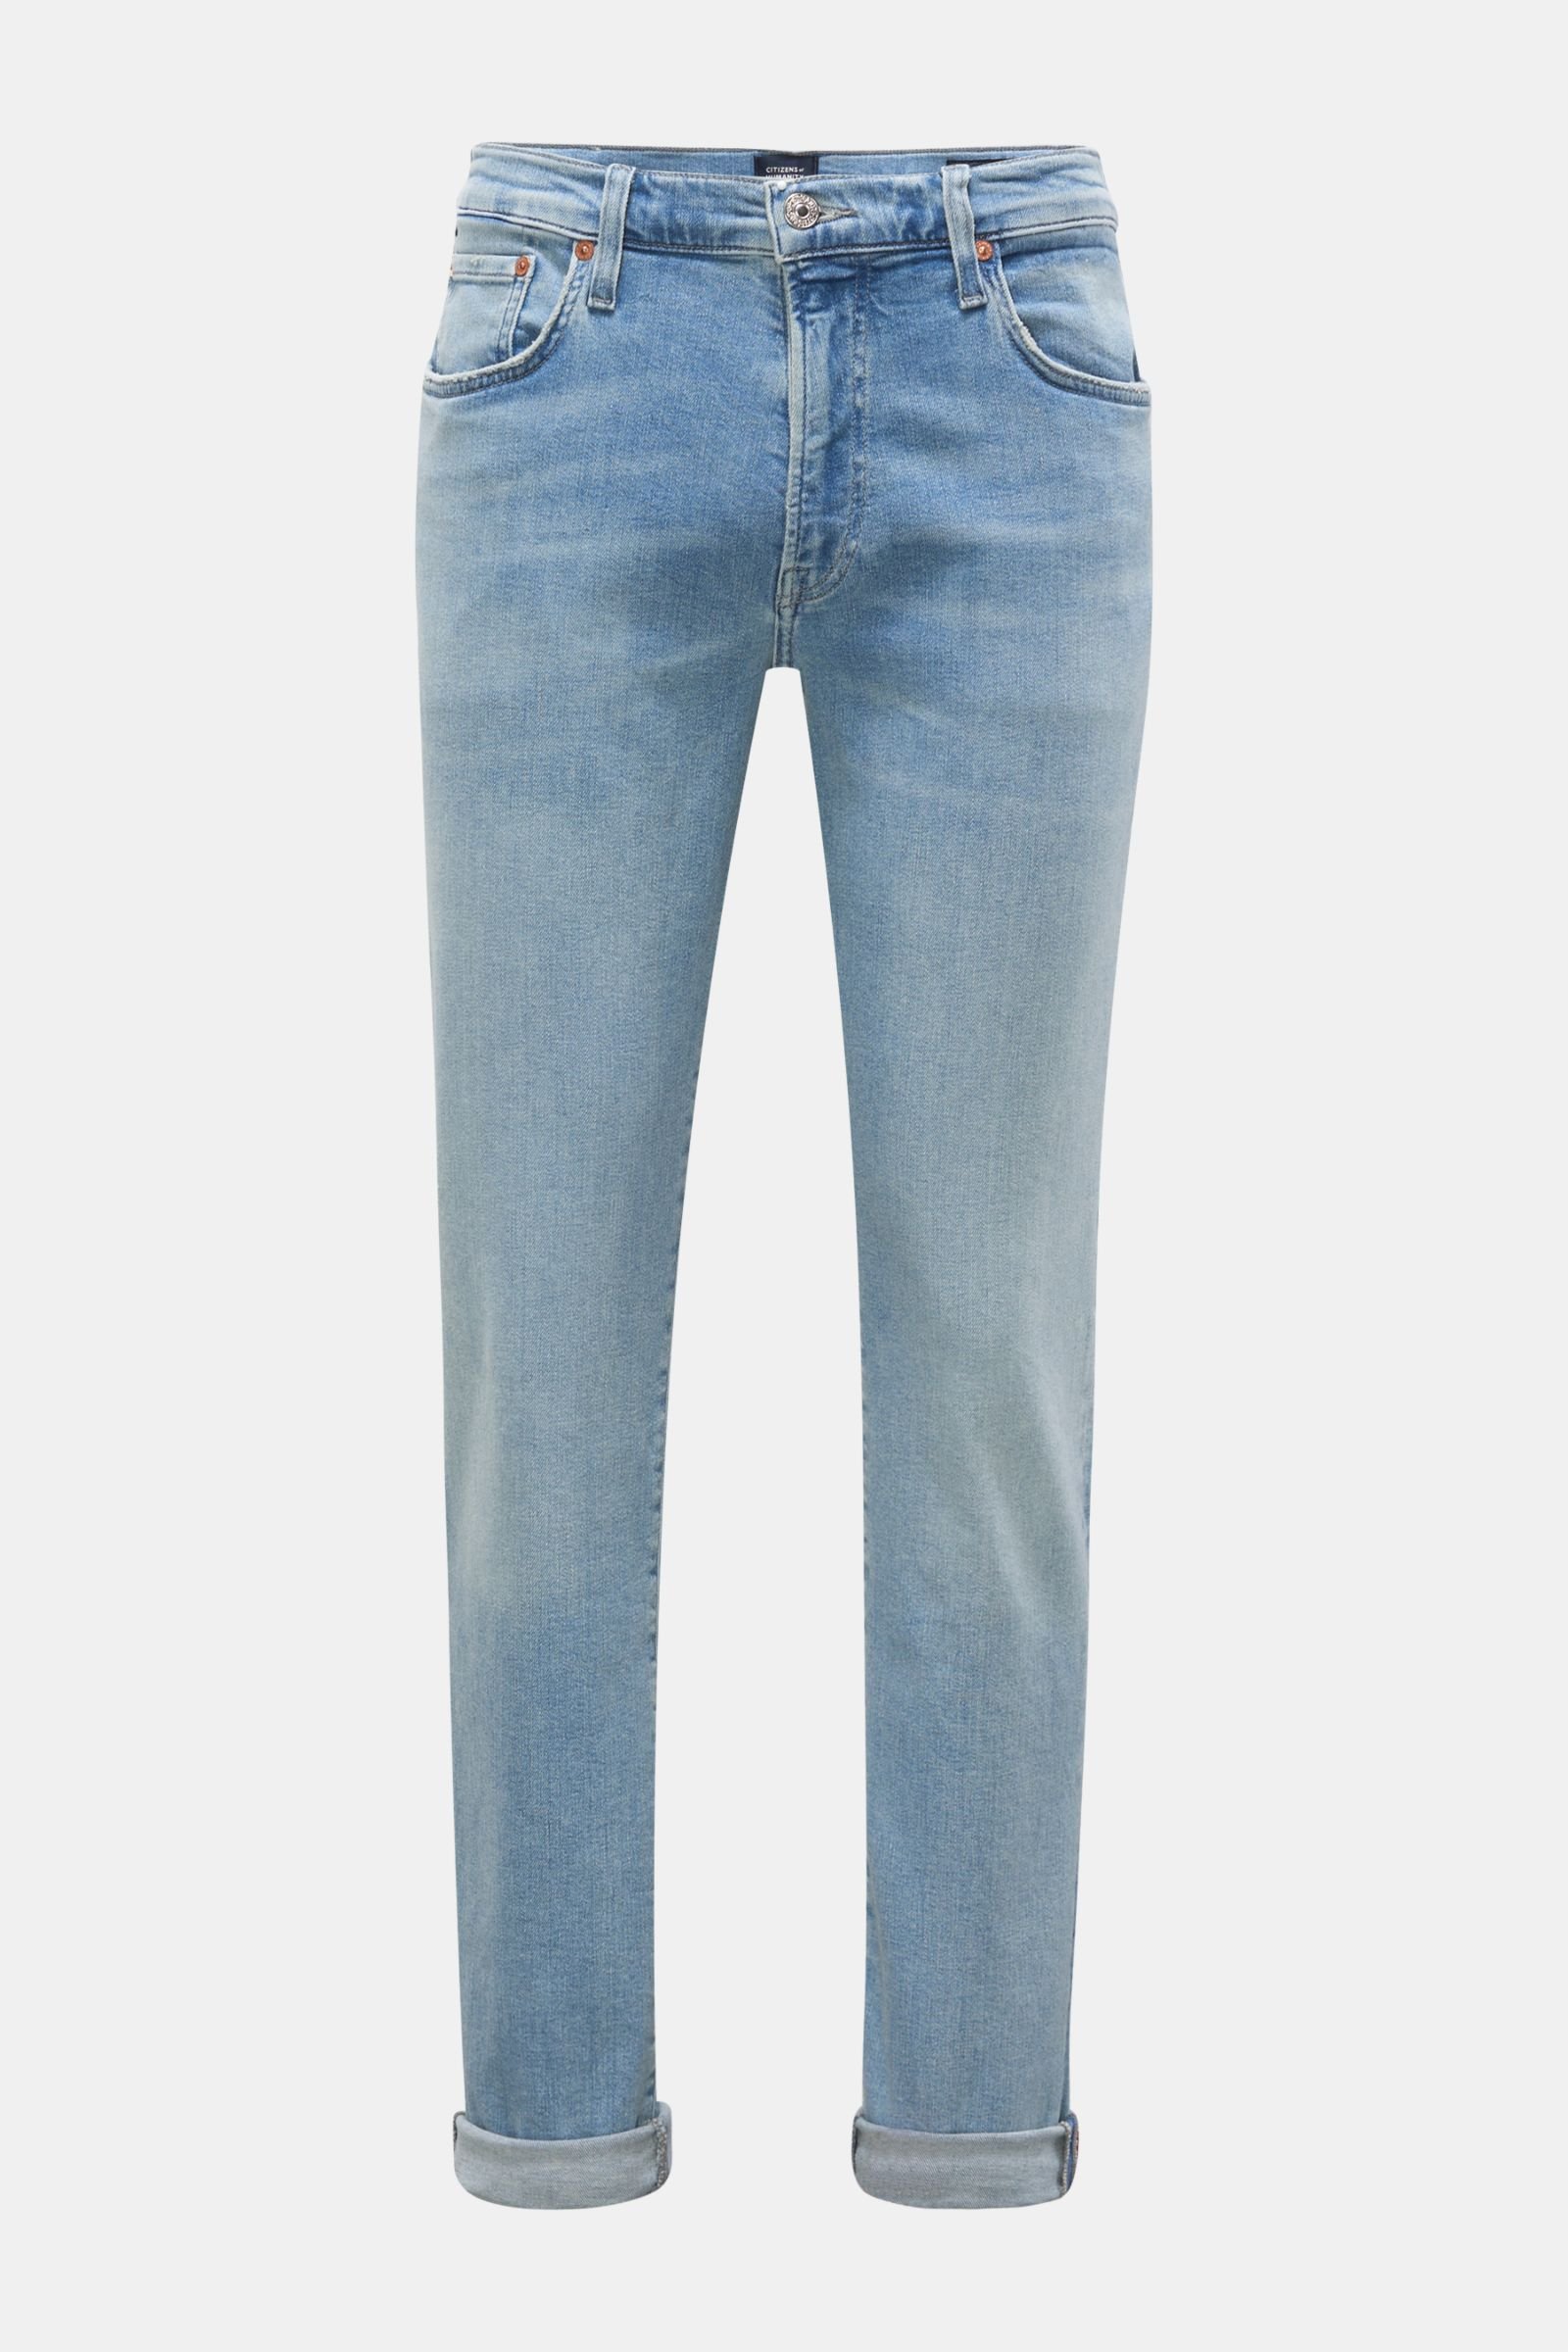 Jeans 'Adler' light blue